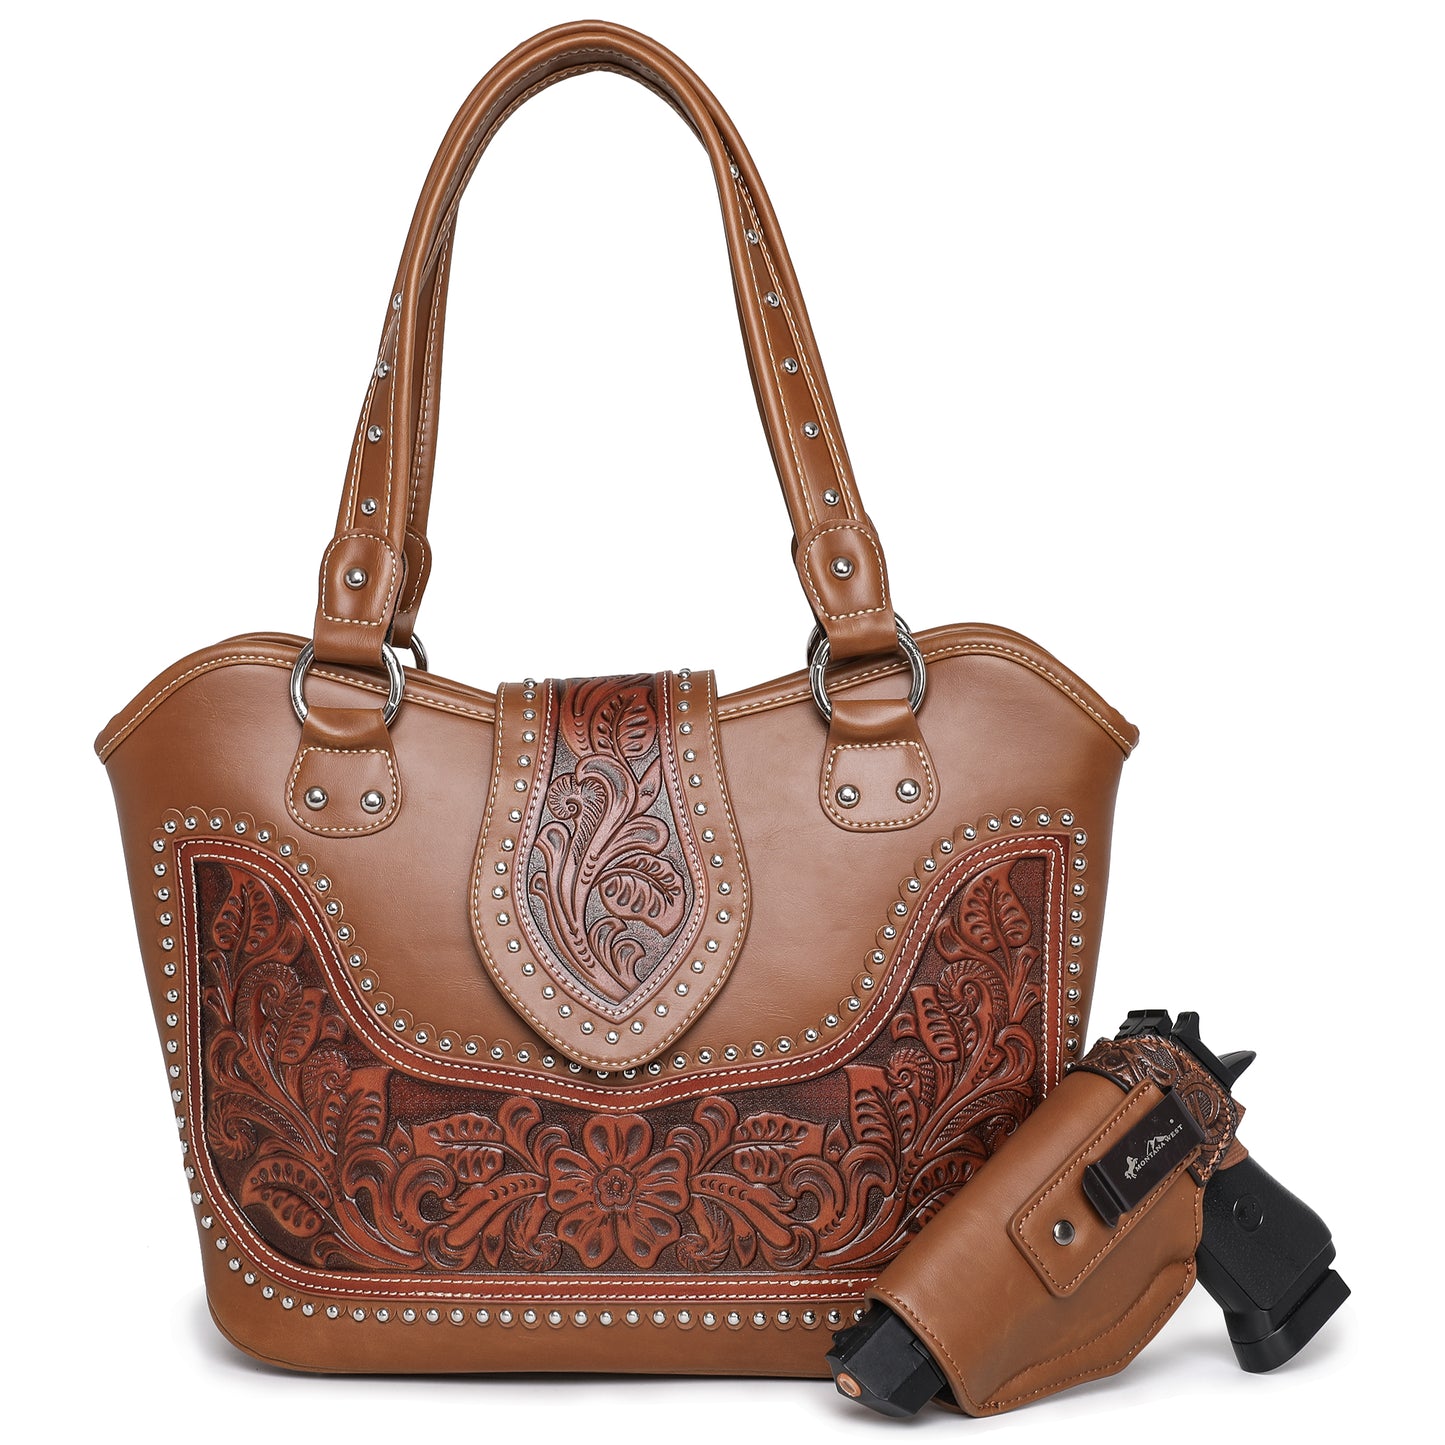 Montana West Western Handbag Leather Shoulder Bag